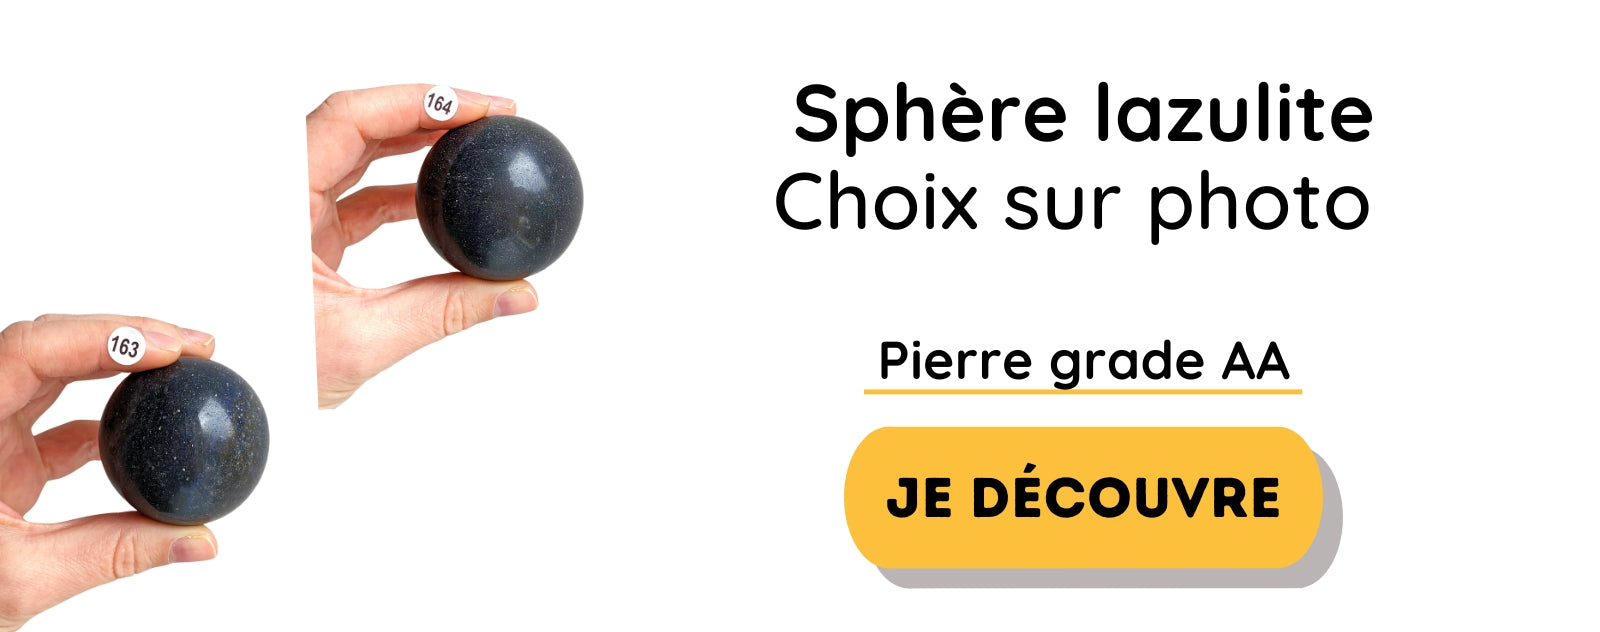 sphere lazulite